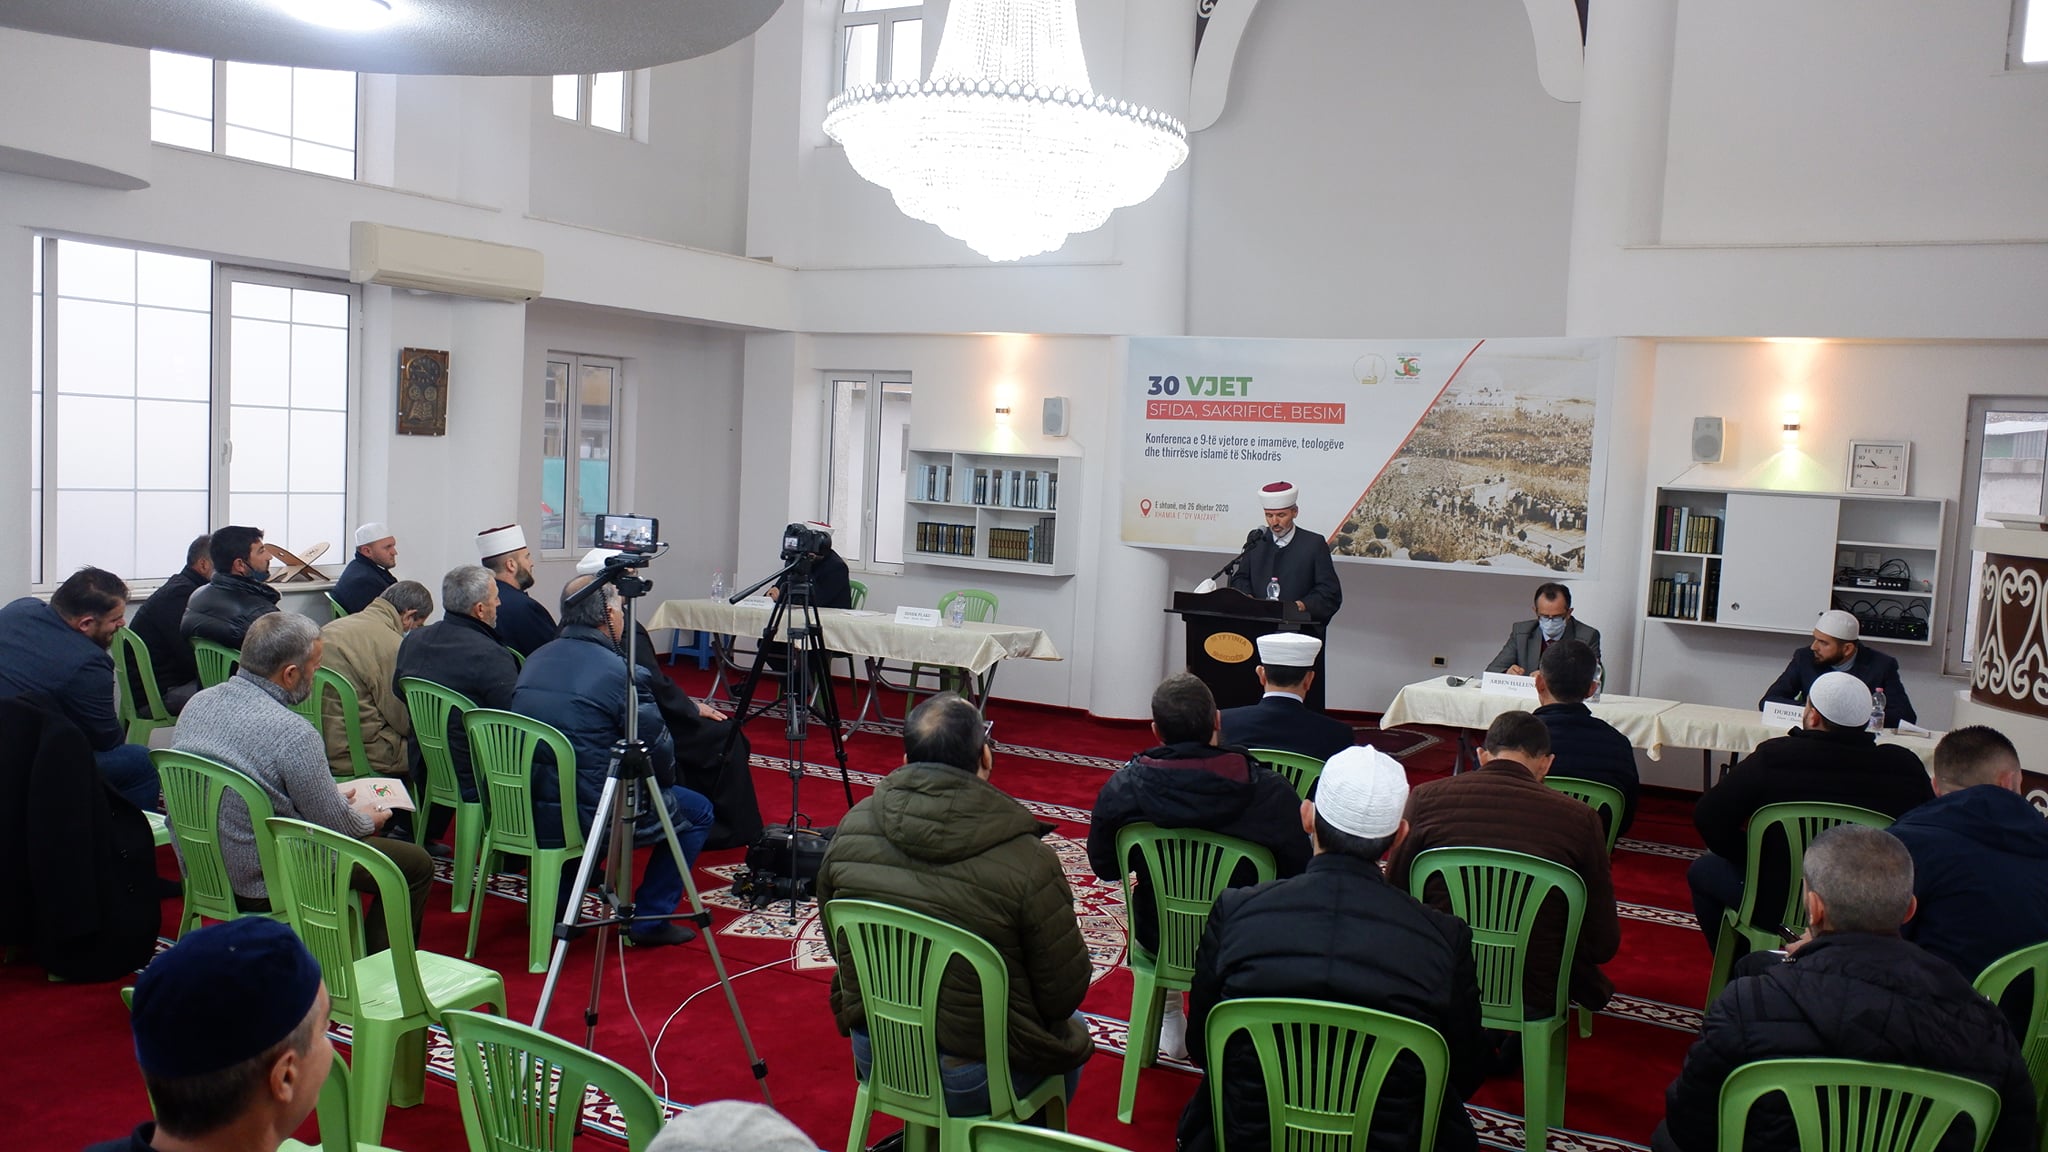 U zhvillua konferenca e 9-të vjetore e imamëve me temë: “30 vjet Sfida, Sakrificë, Besim”